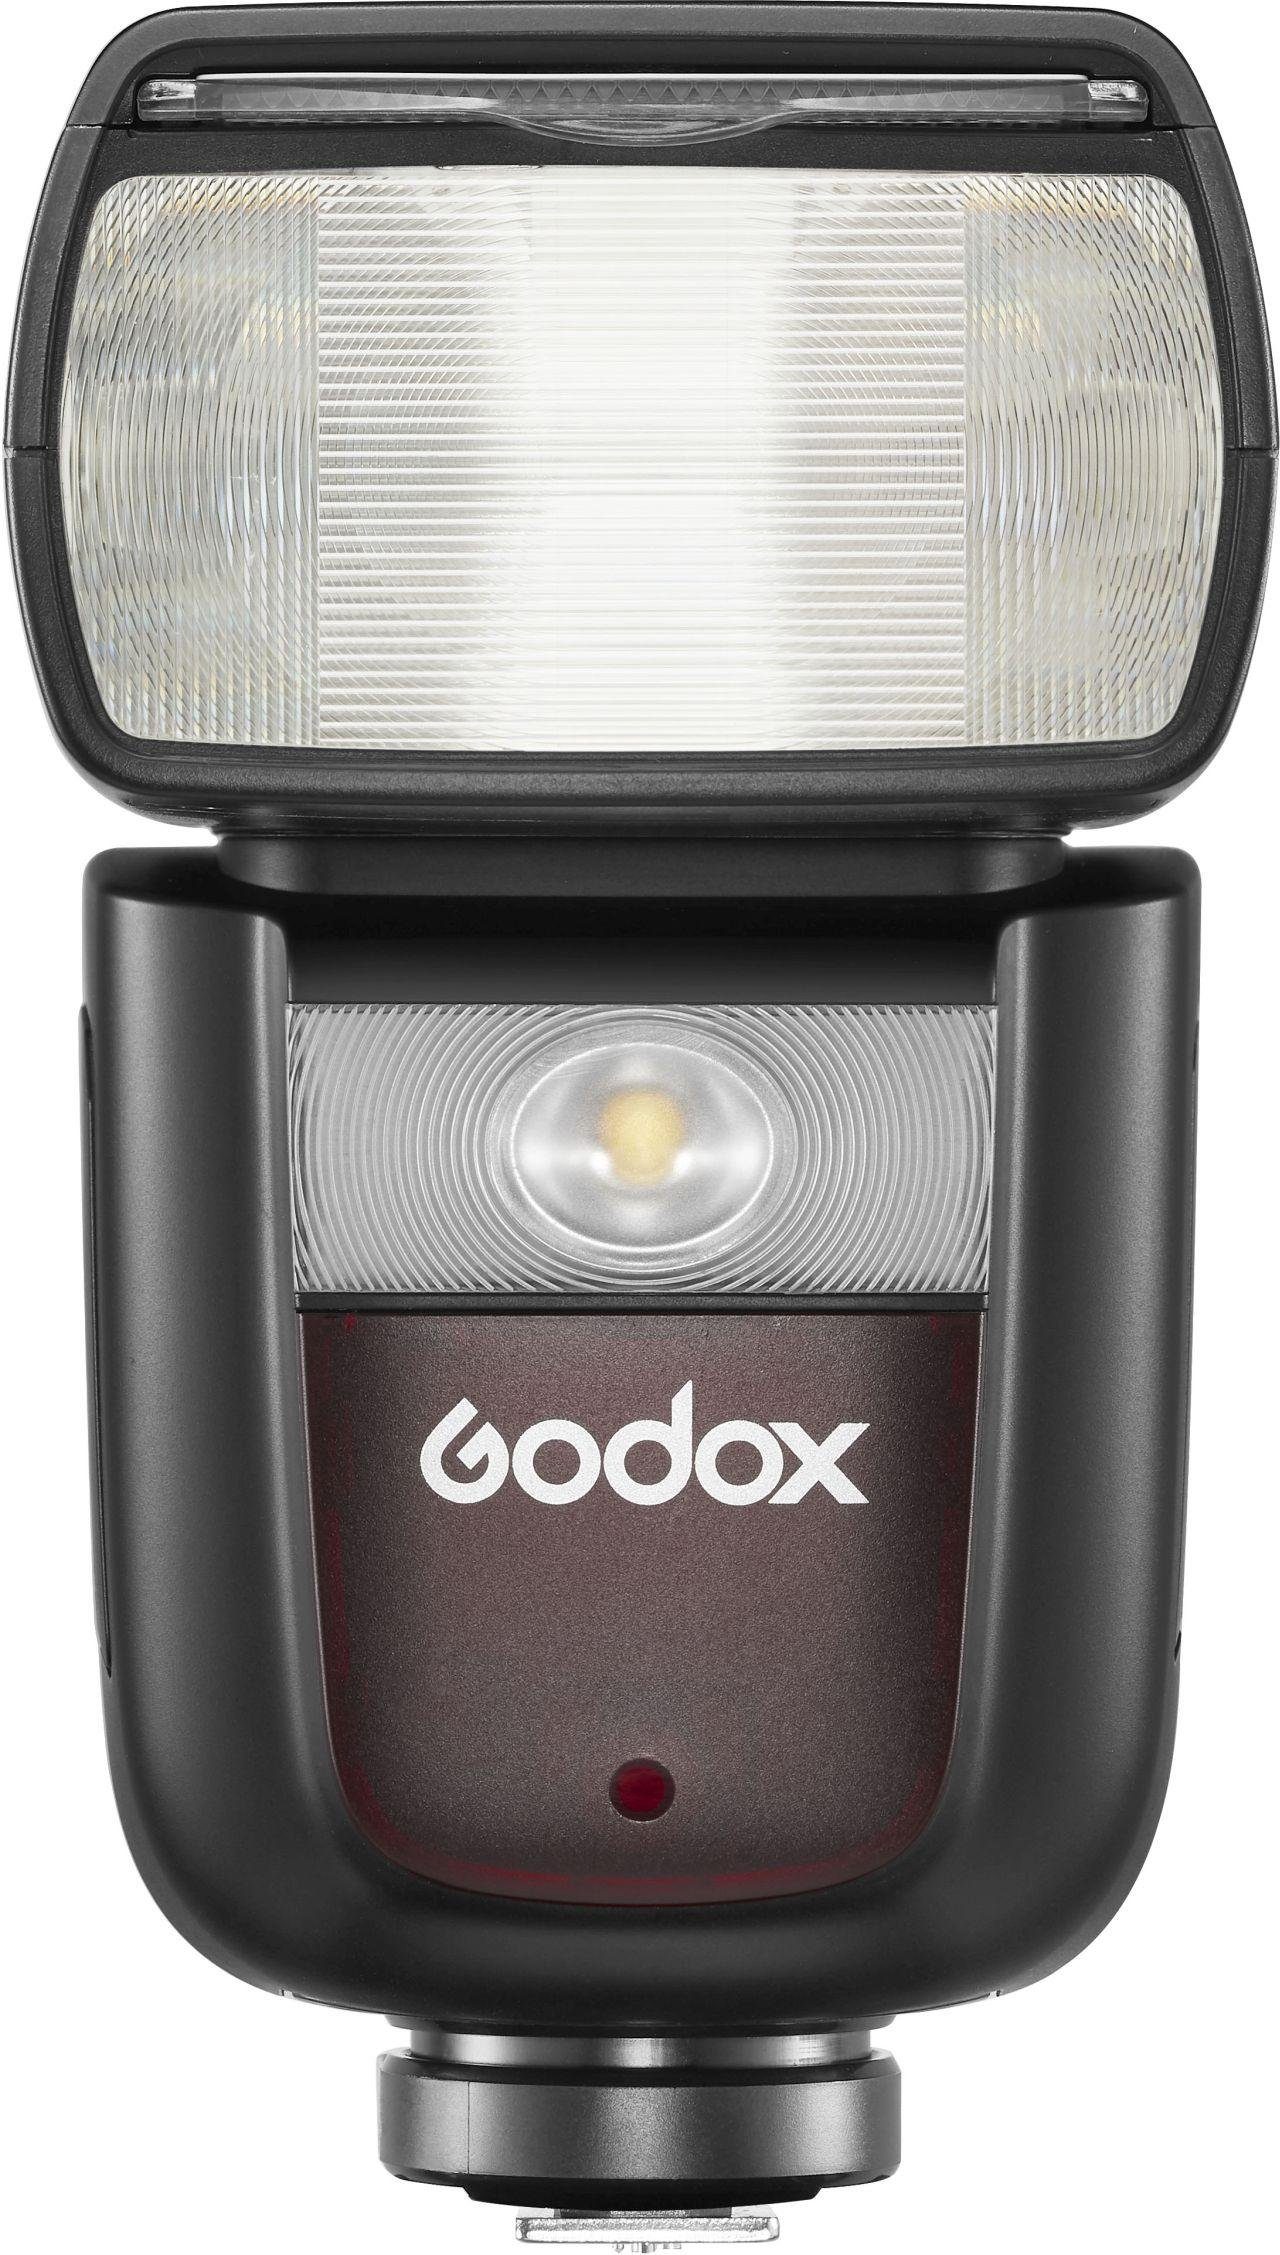 Akku Godox für Blitzgerät Nikon V860III-N mit Objektiv